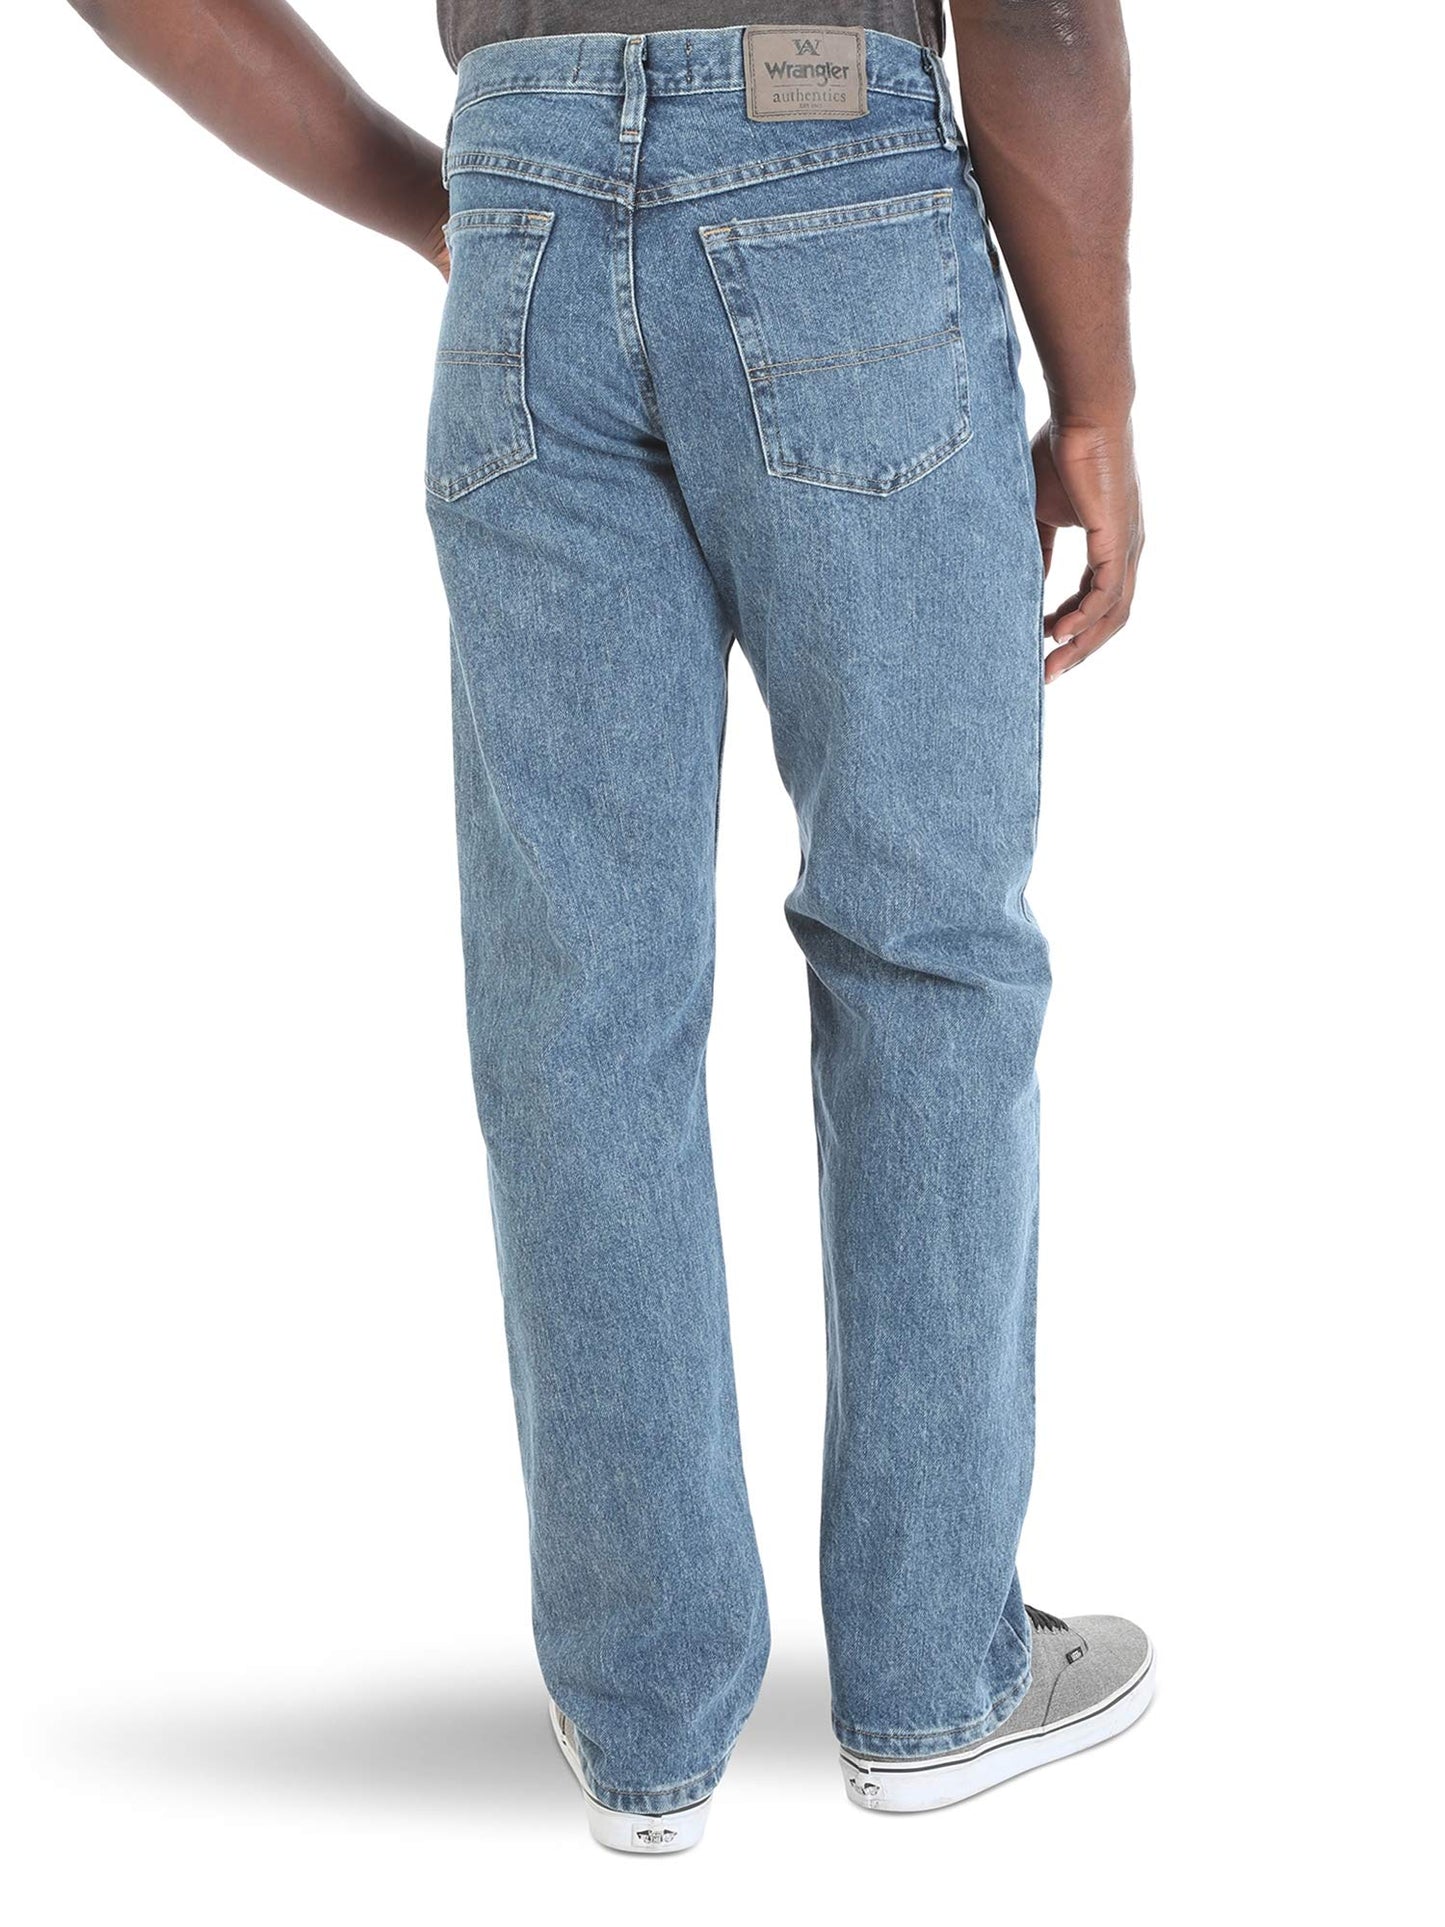 Wrangler Authentics Men's Classic 5-Pocket Relaxed Fit Cotton Jean, Vintage Stonewash, 35W x 34L